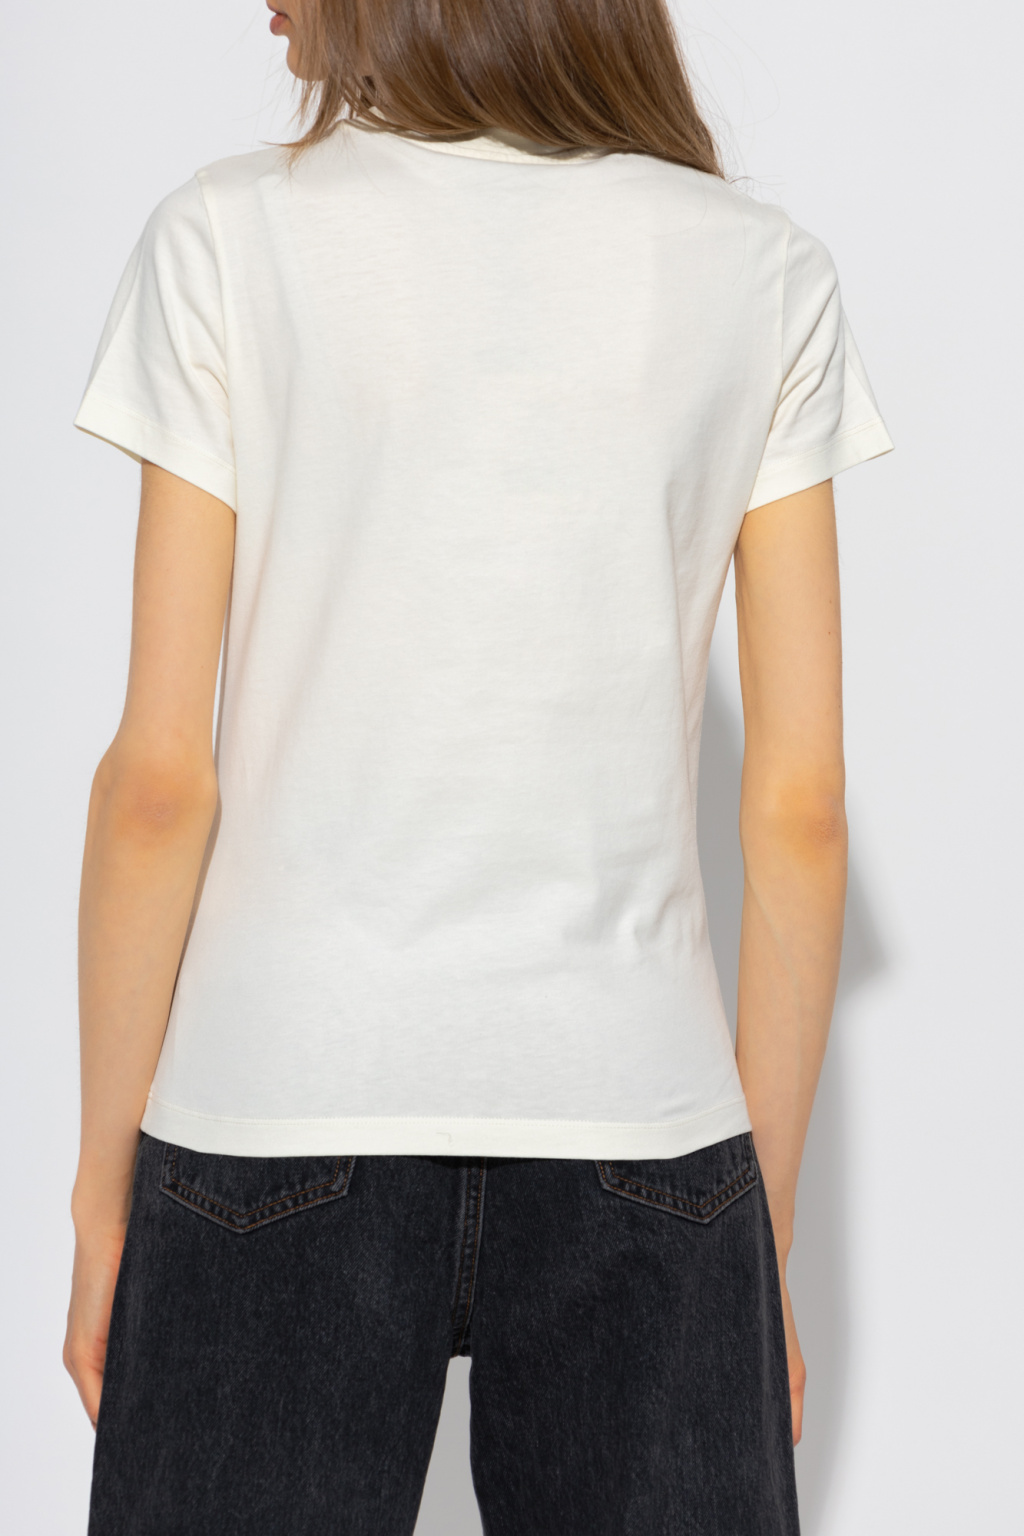 Kenzo T-shirt in cotone con canotta